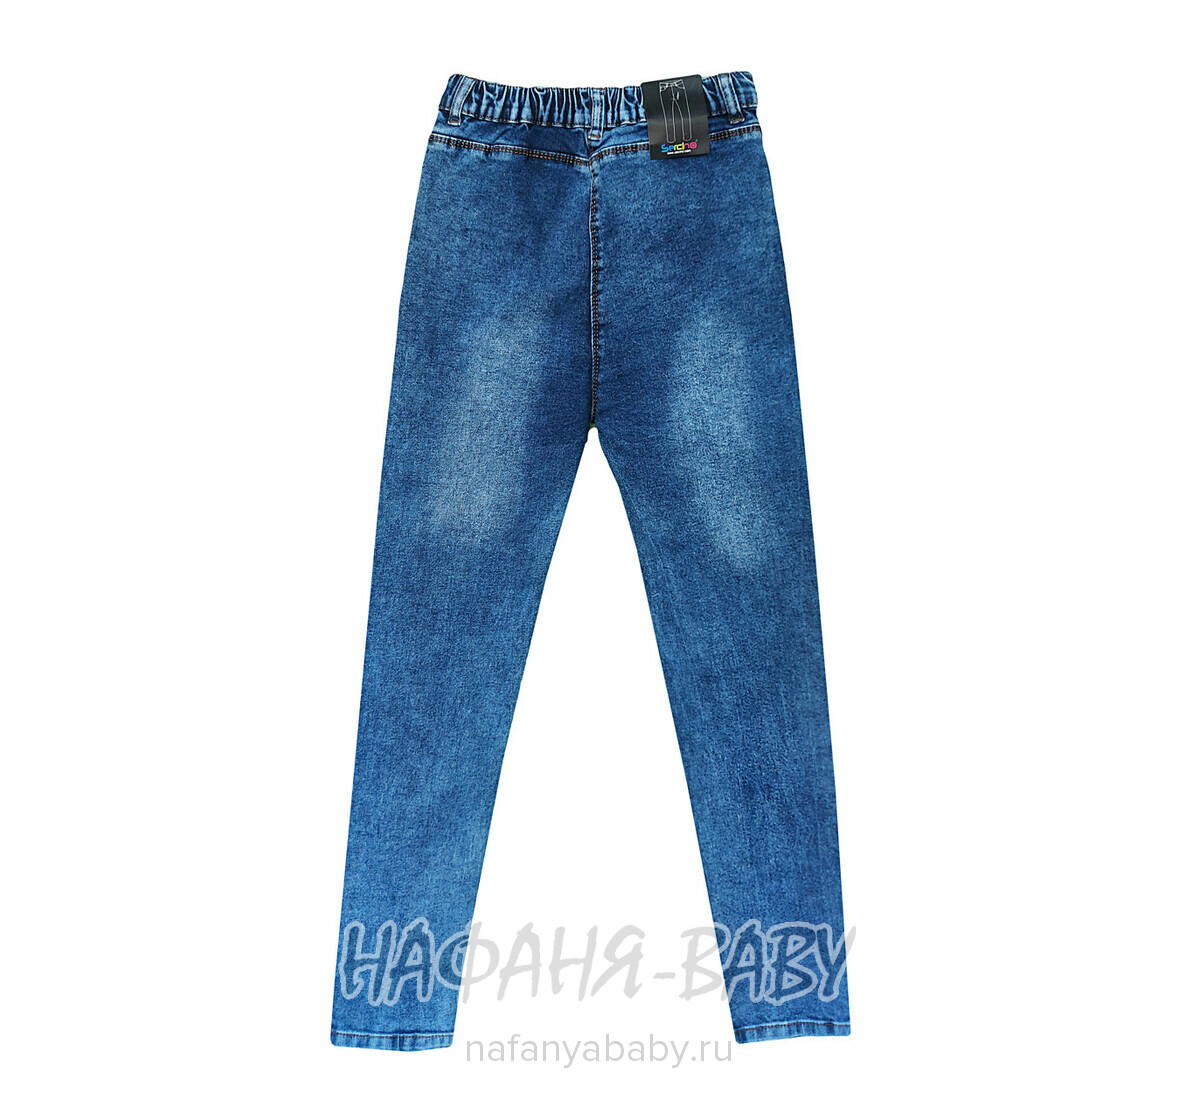 Подростковые джинсы SERCINO, купить в интернет магазине Нафаня. арт: 57424.